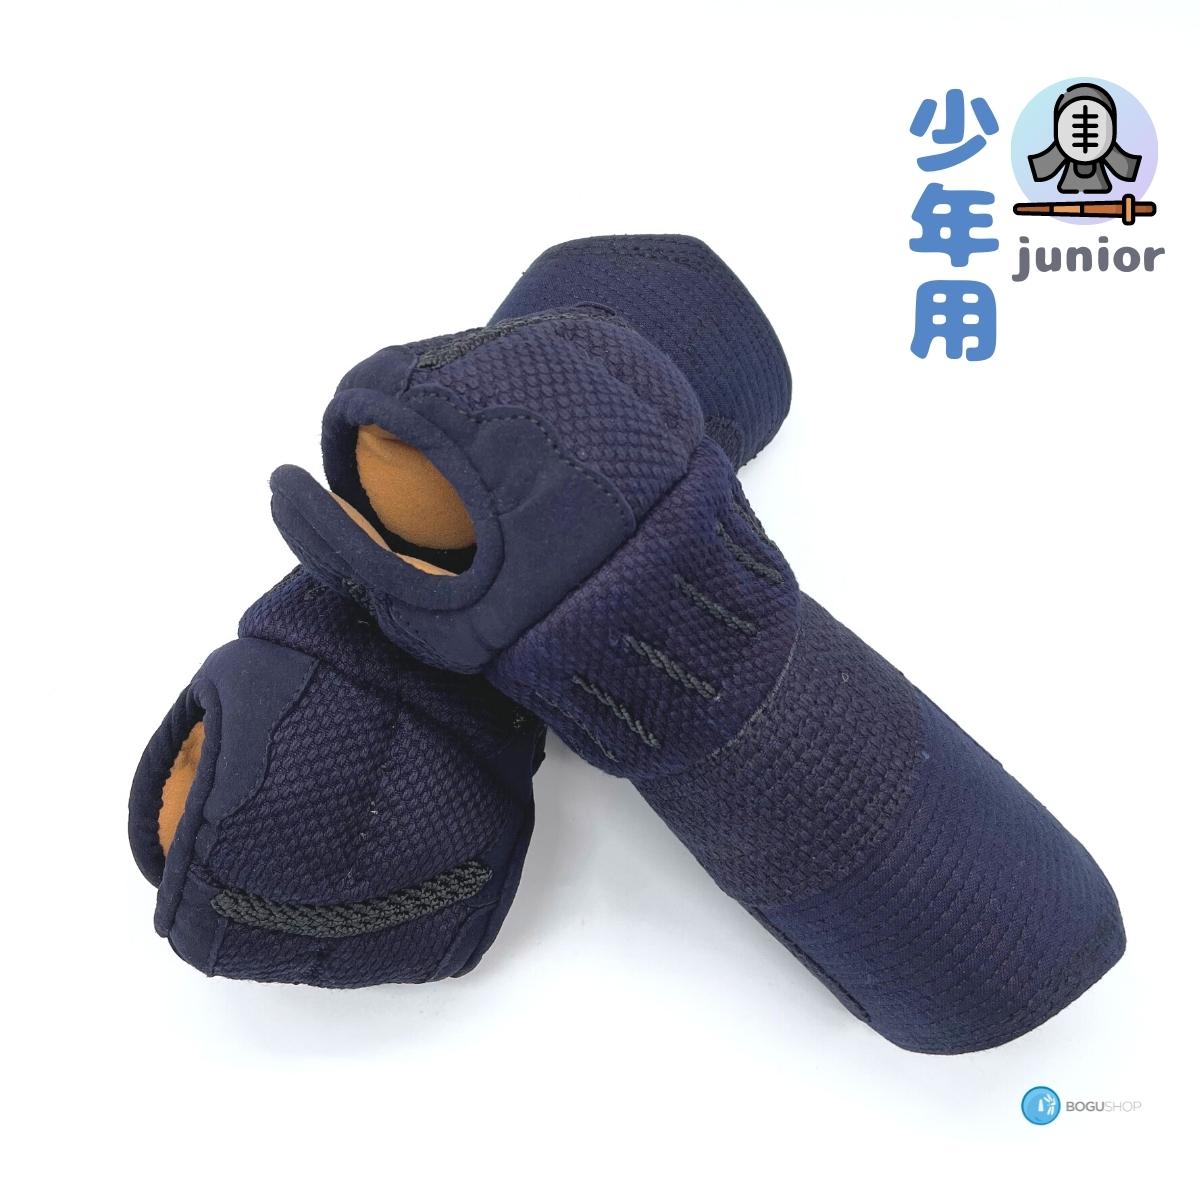 [Orizashi / Clarino Leather] 4MM Junior Bogu Set #7